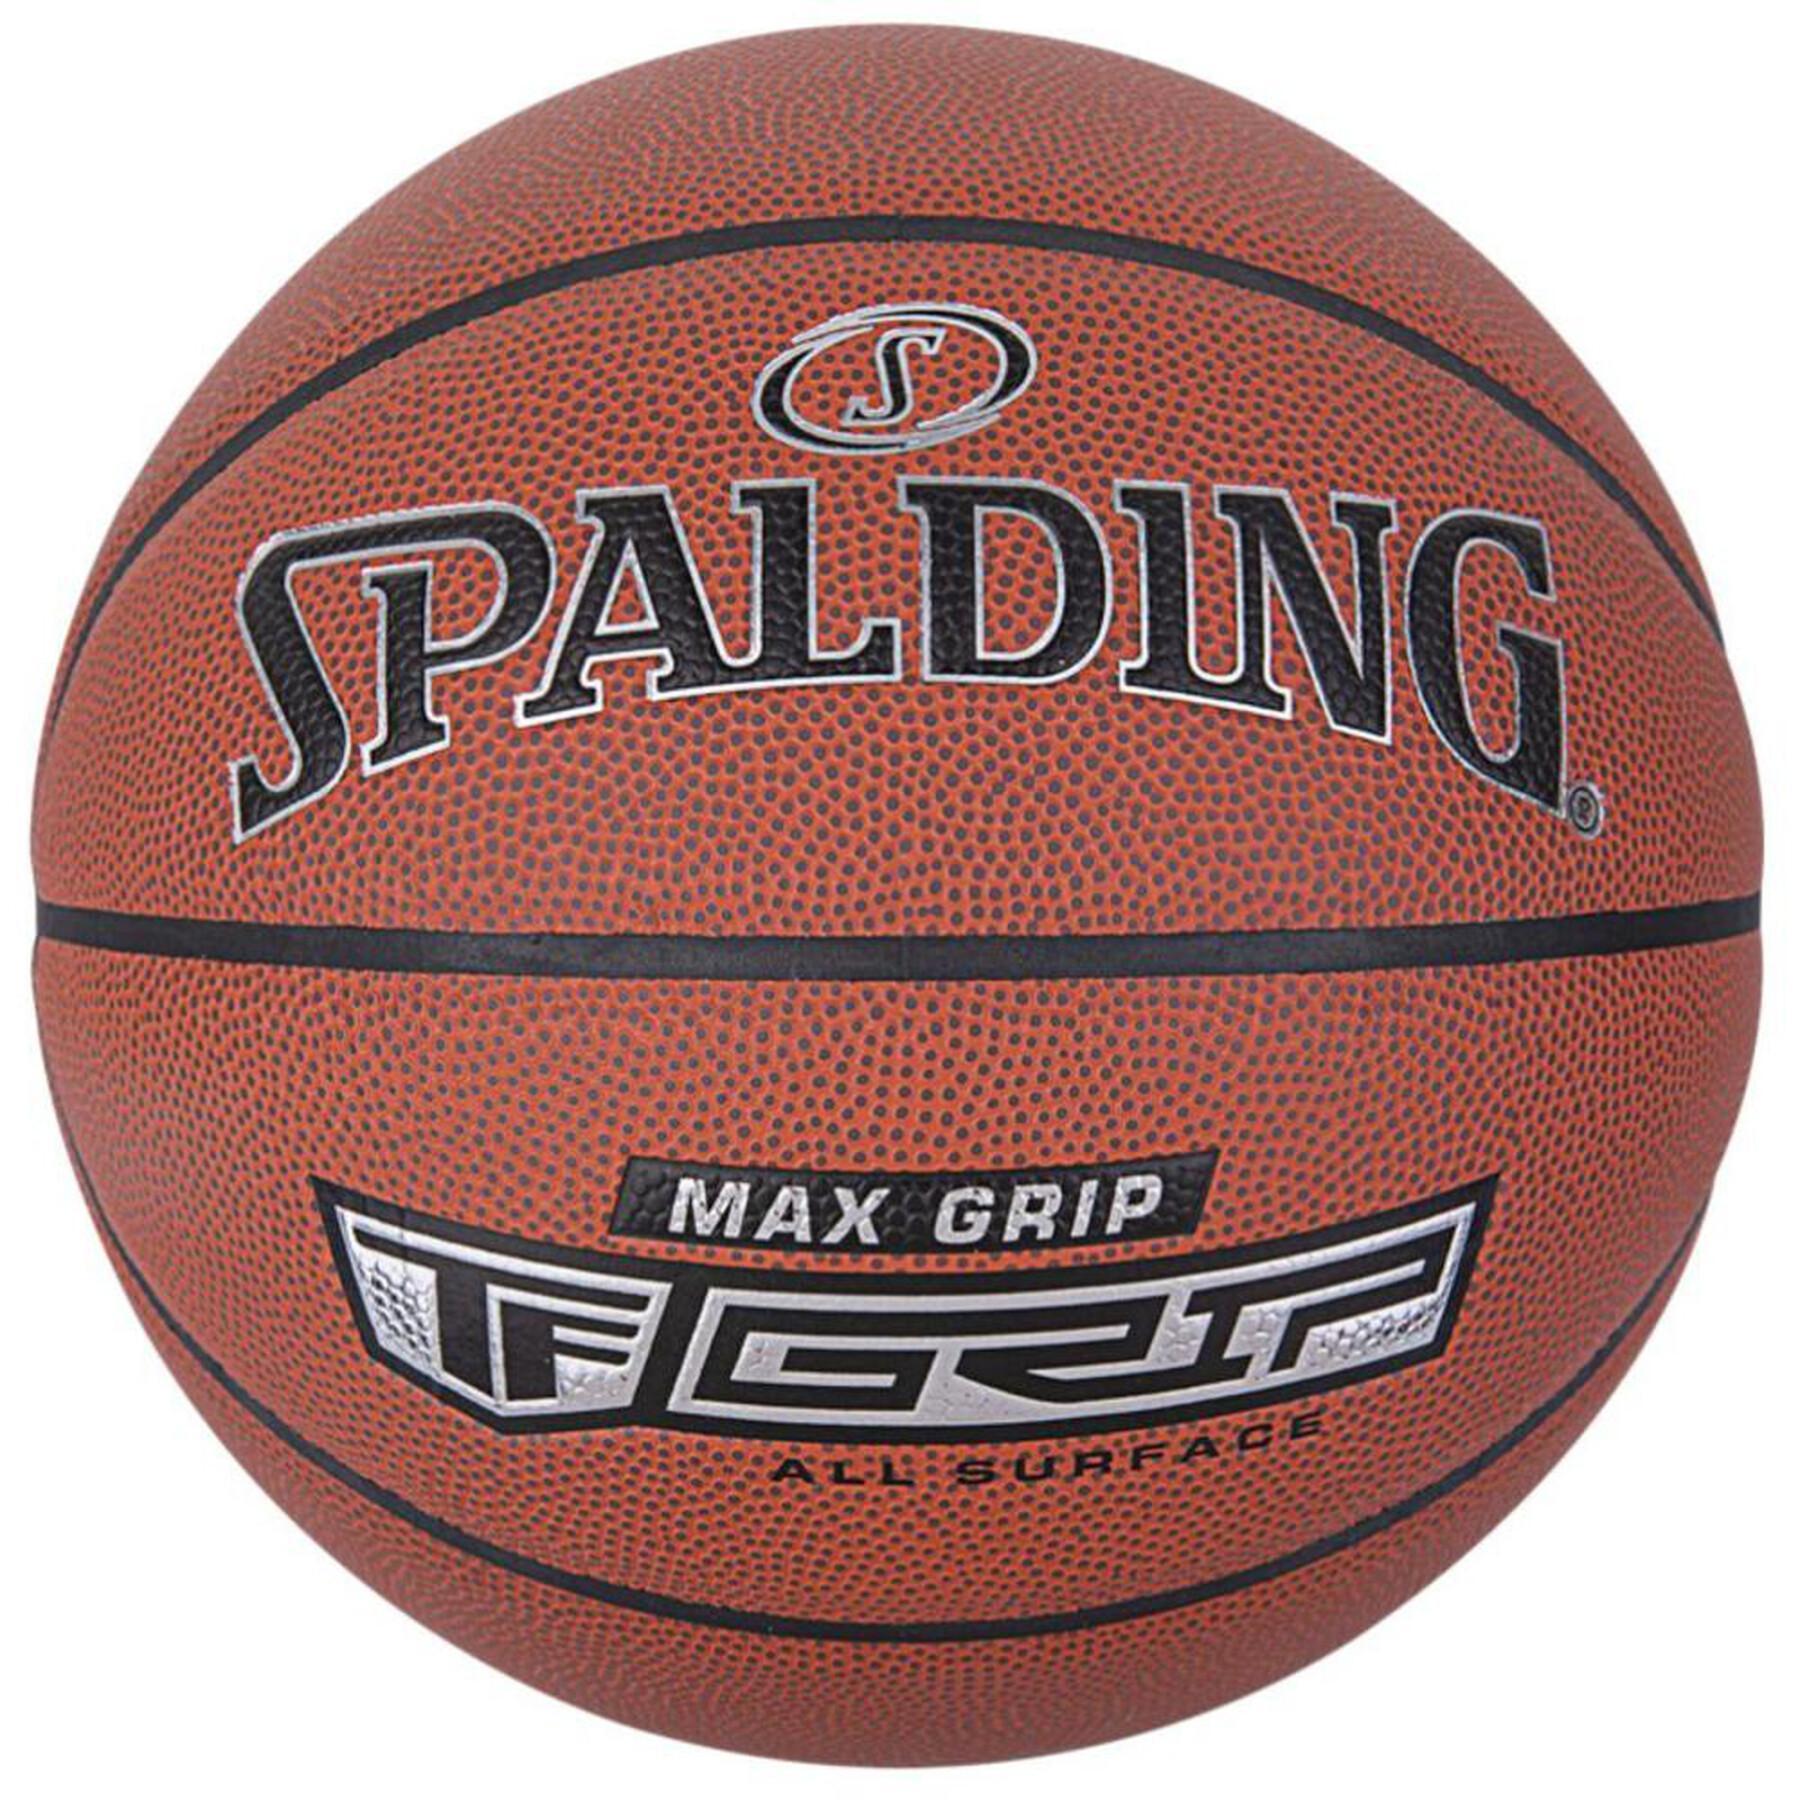 Piłka do koszykówki Spalding Max Grip Composite